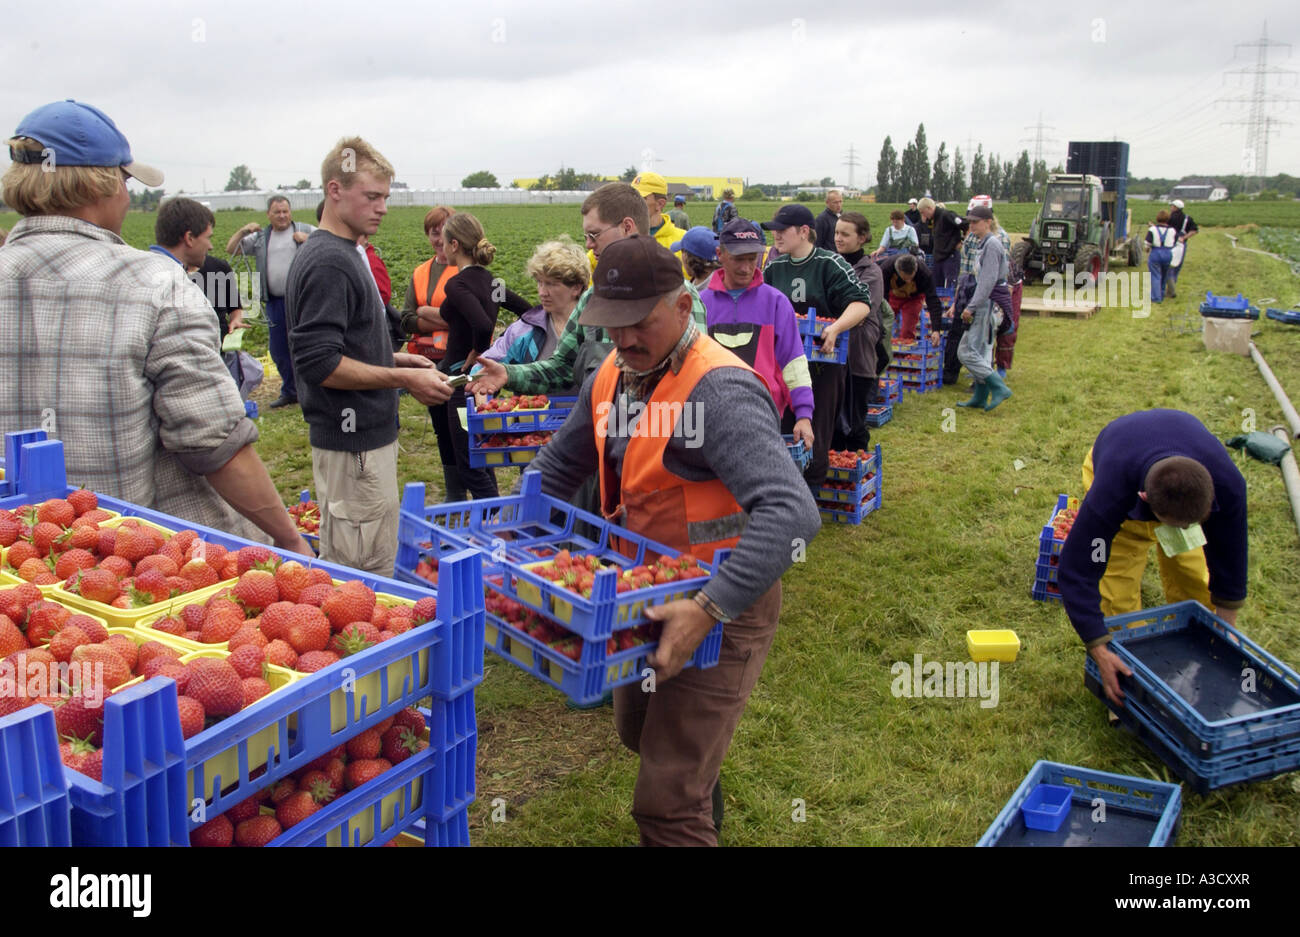 Les travailleurs saisonniers de la Pologne la récolte des fraises Banque D'Images